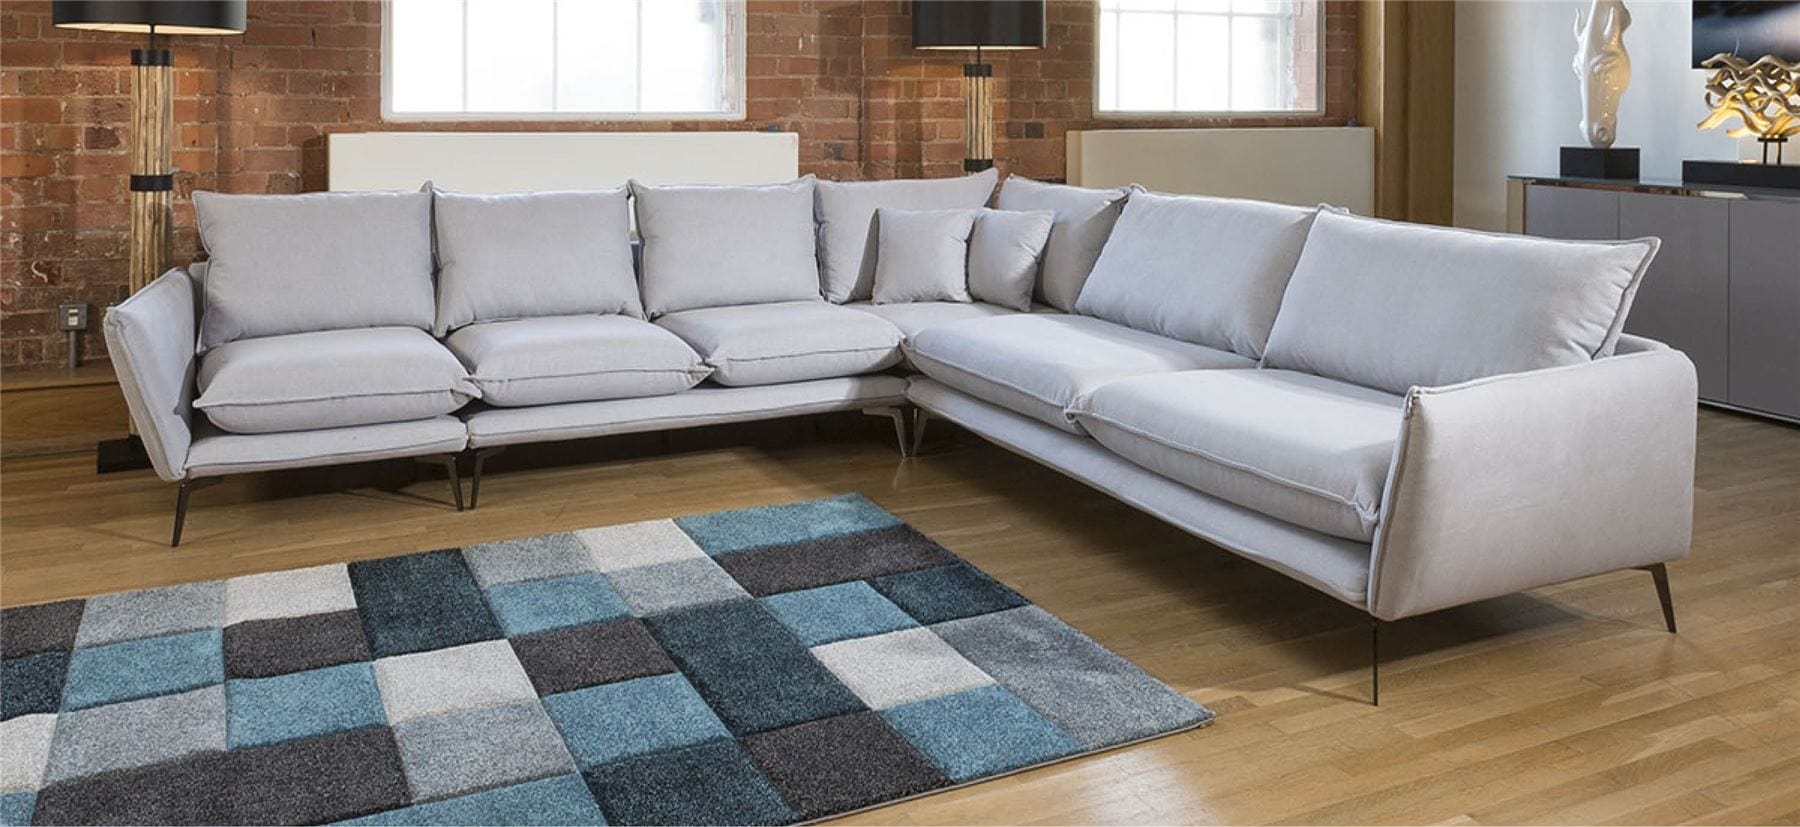 Quatropi Amazing Rachel Large Corner Modular Sofa Many Fabrics 3.2 x 3.05m